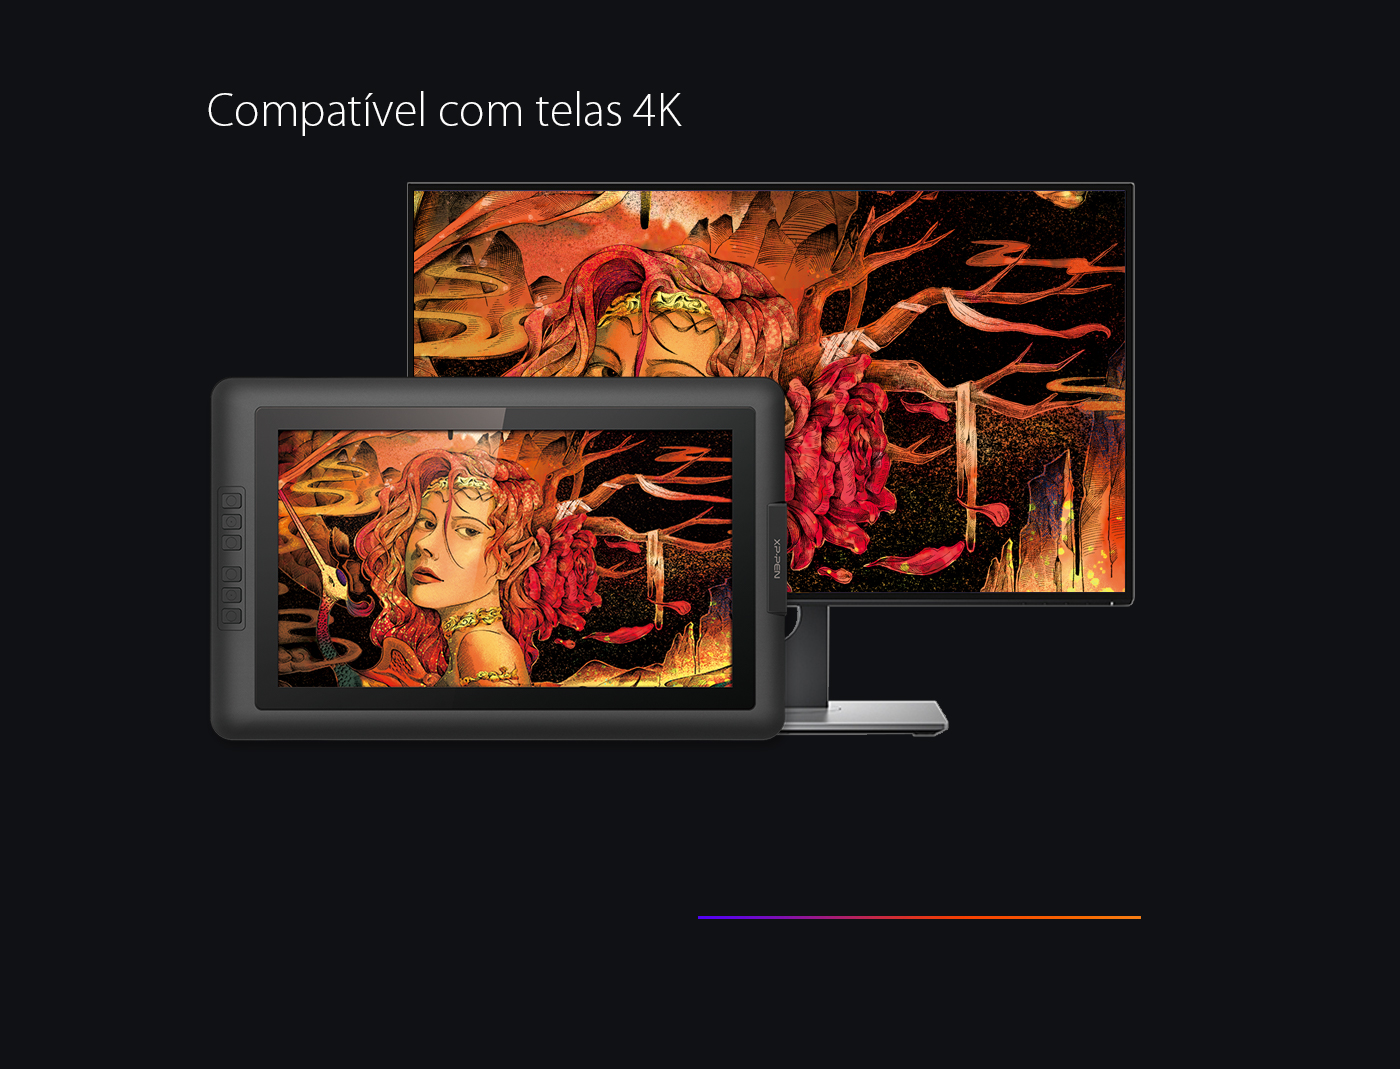  O novo driver permite que XP-Pen Artist 15.6 funcione perfeitamente com telas 4K 